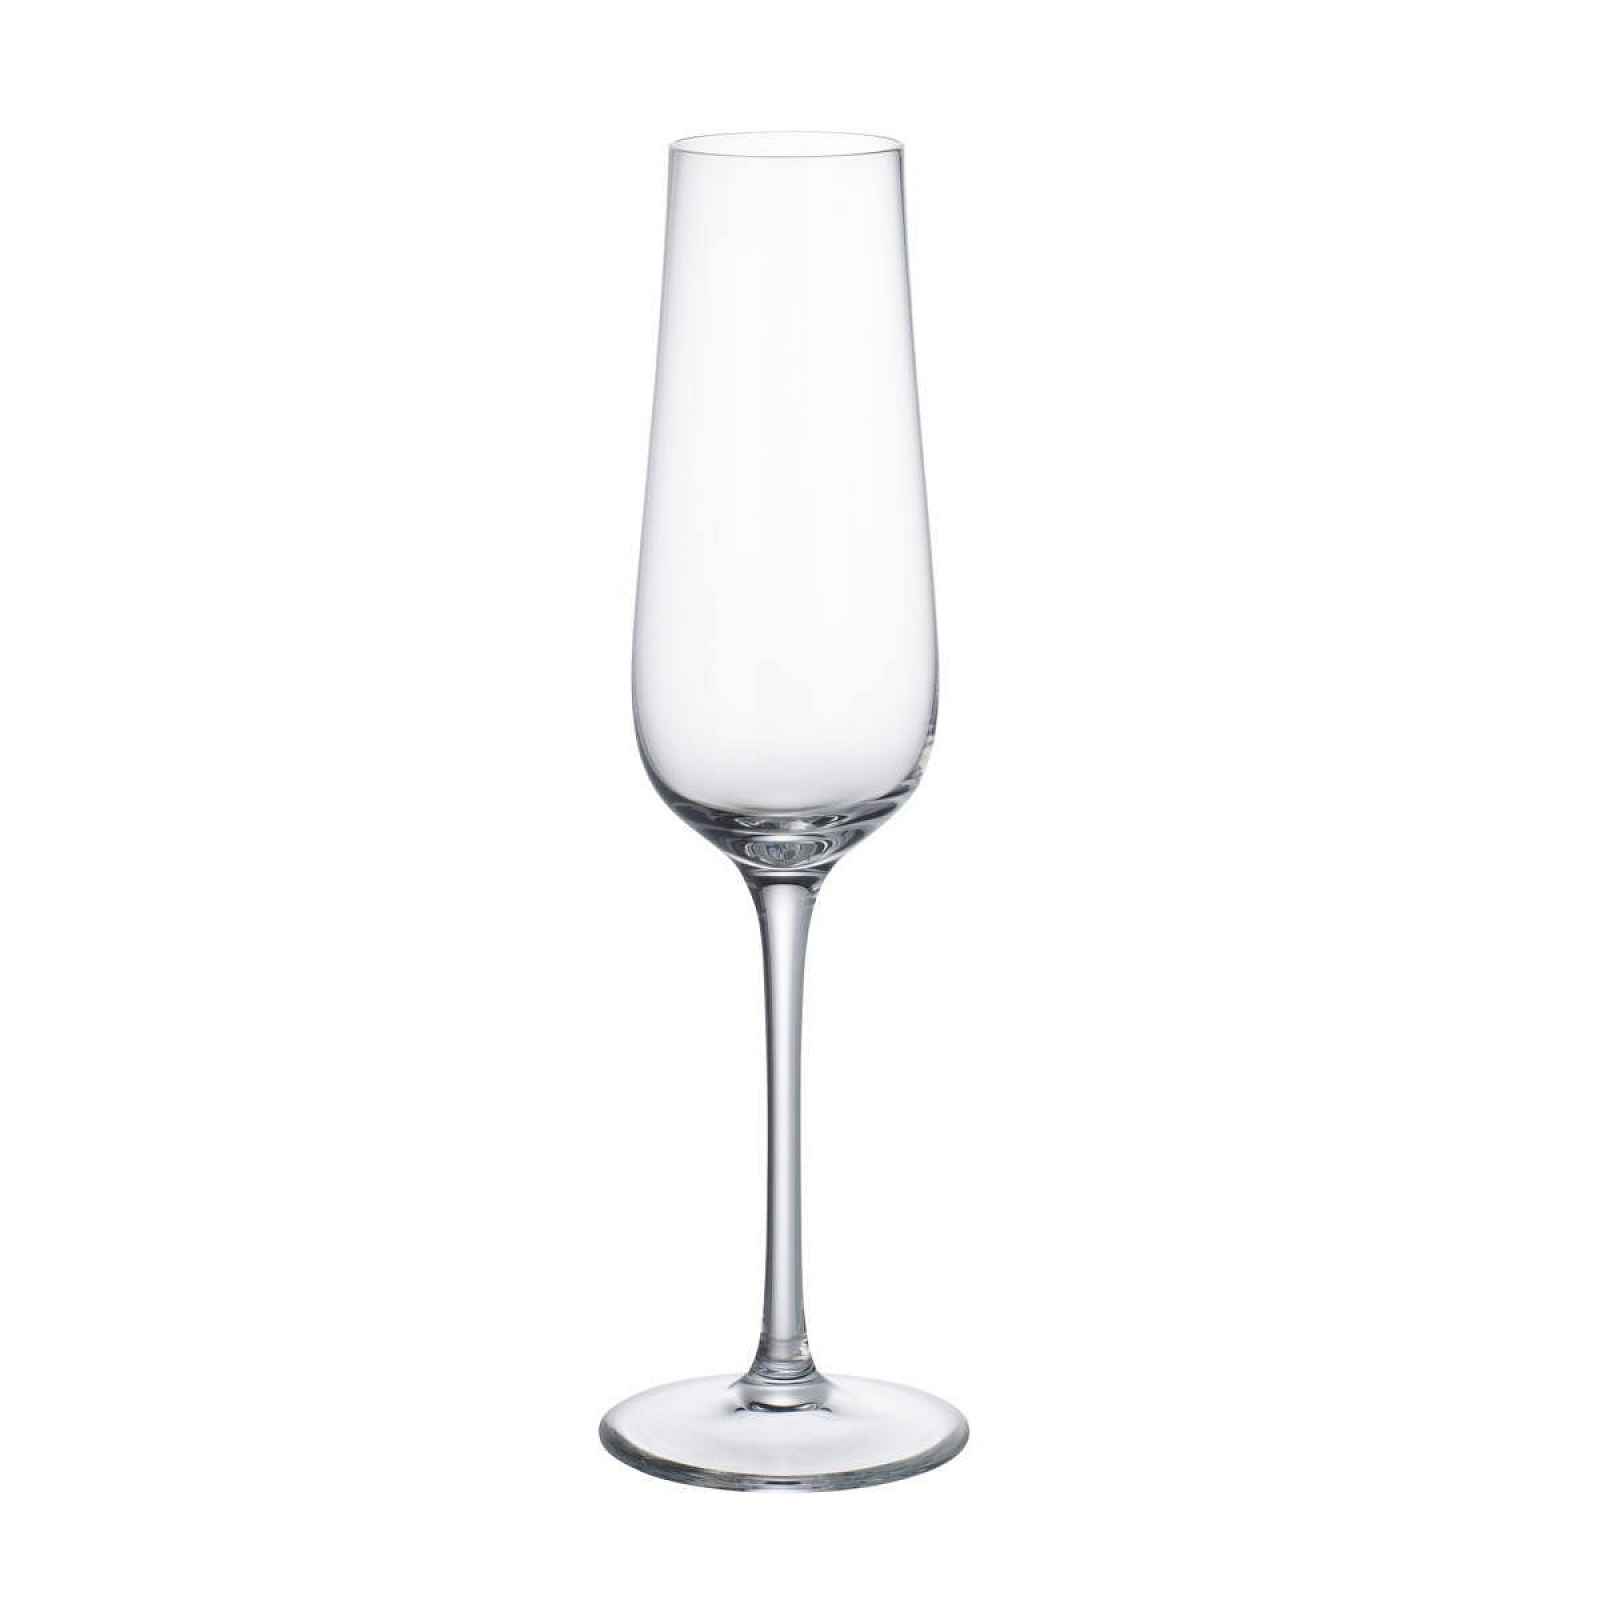 Villeroy & Boch Purismo Specials sklenice na šampaňské, 0,27 l